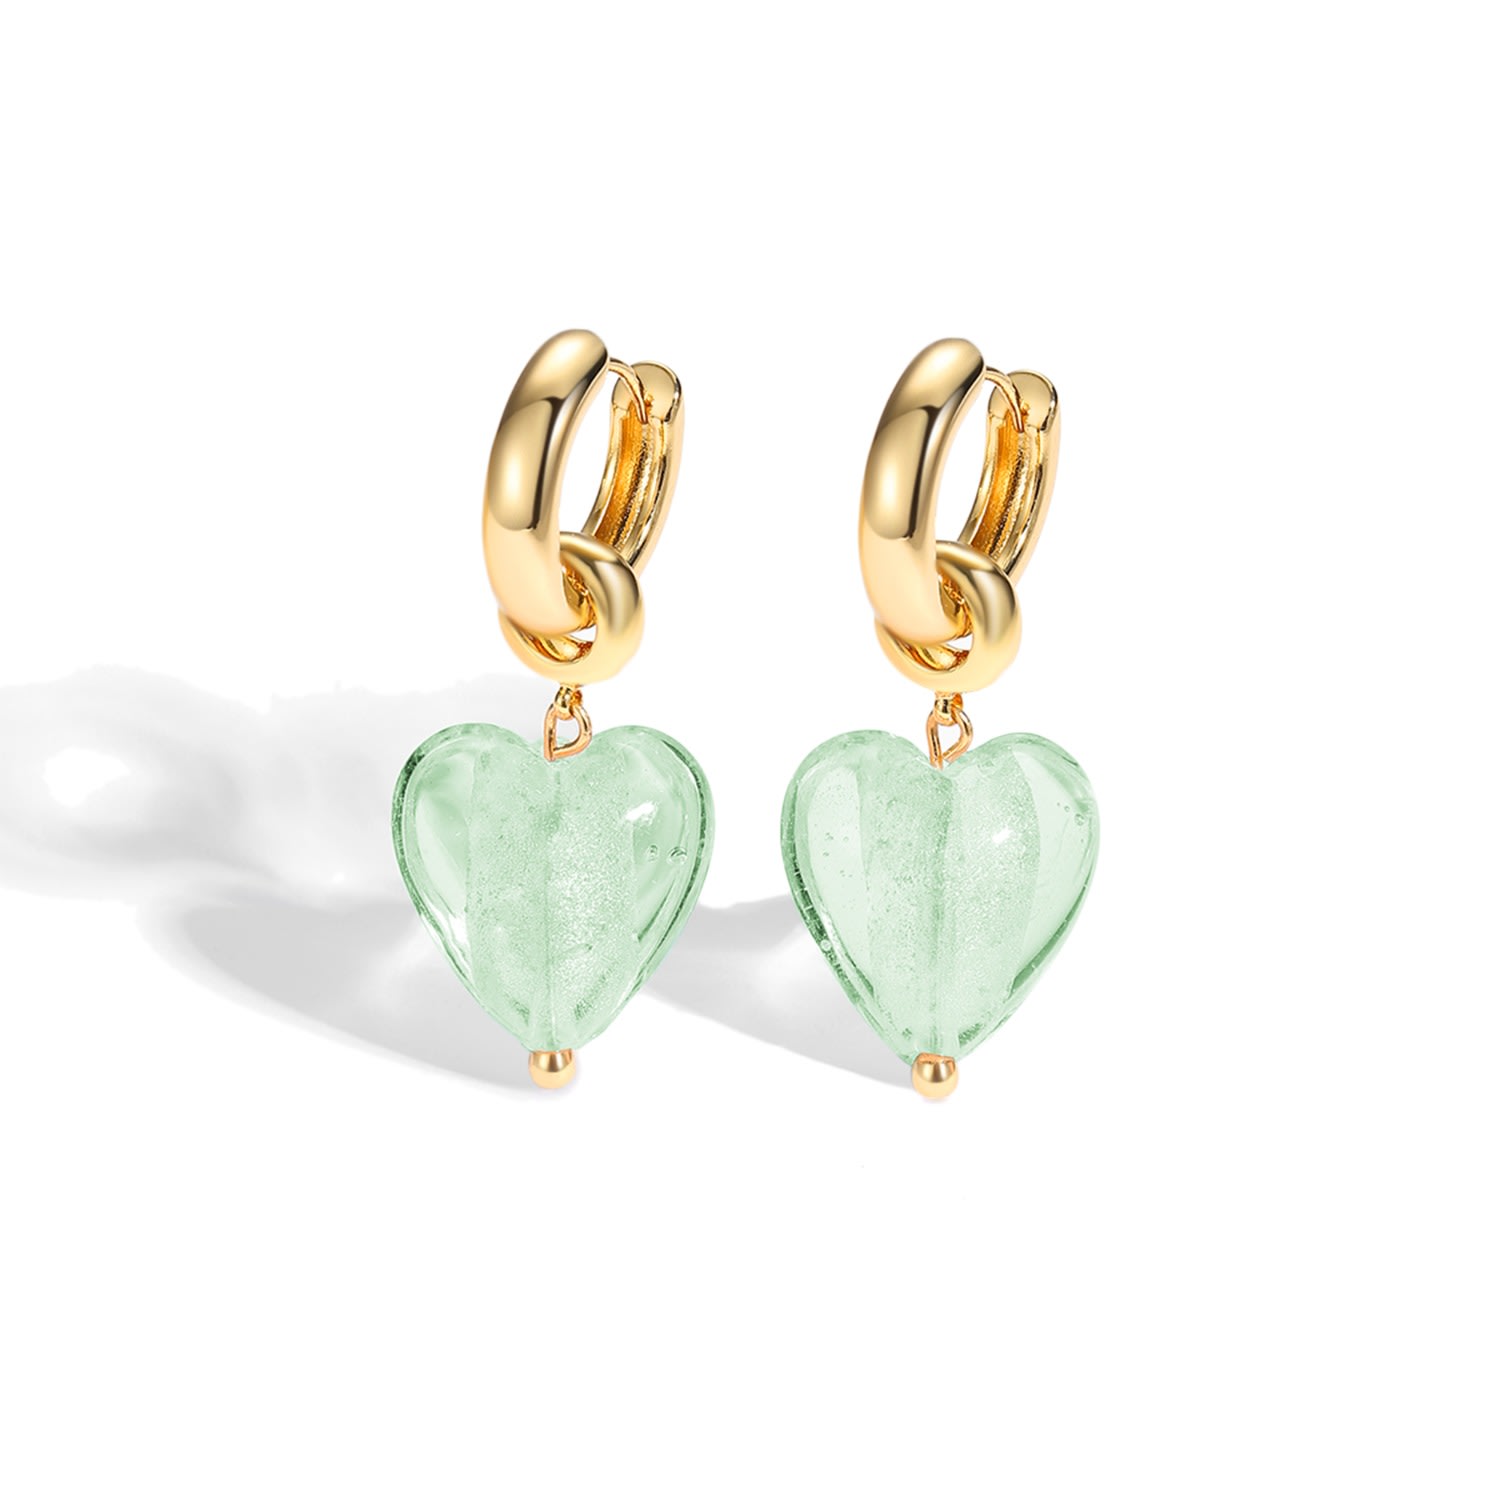 Shop Classicharms Women's Esmée Lime Green Glaze Heart Dangle Earrings